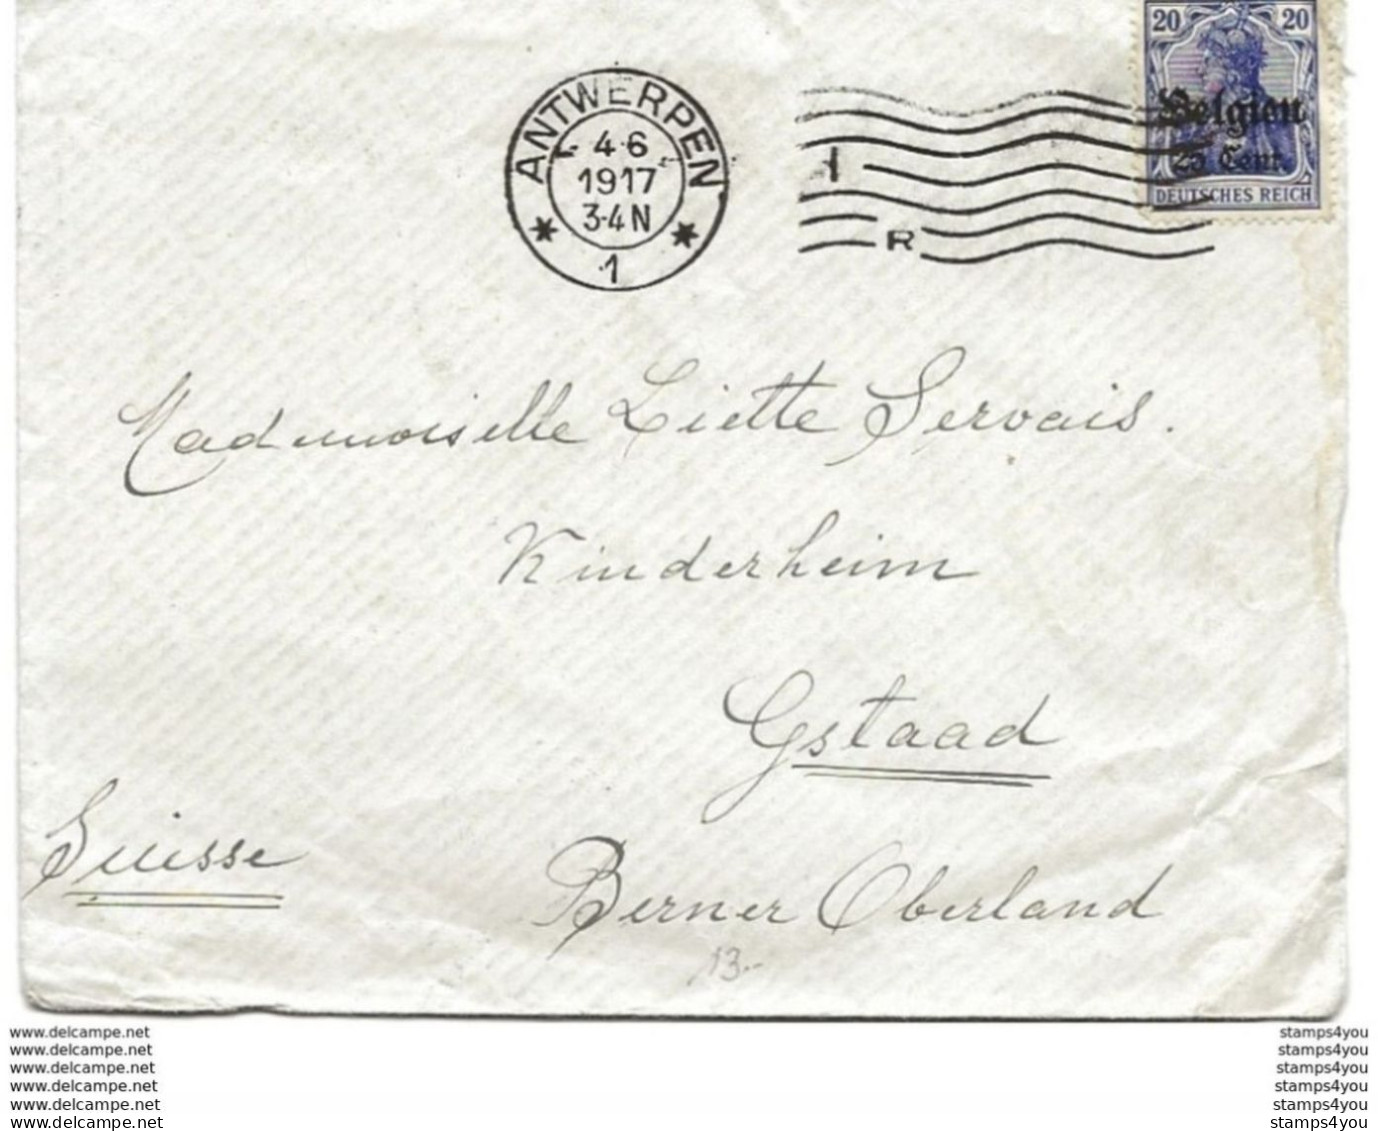 221 - 48 - Enveloppe Envoyée D'Anvers En Suisse - Timbre Allemand Surchargé "Belgien" 1917 - WO1